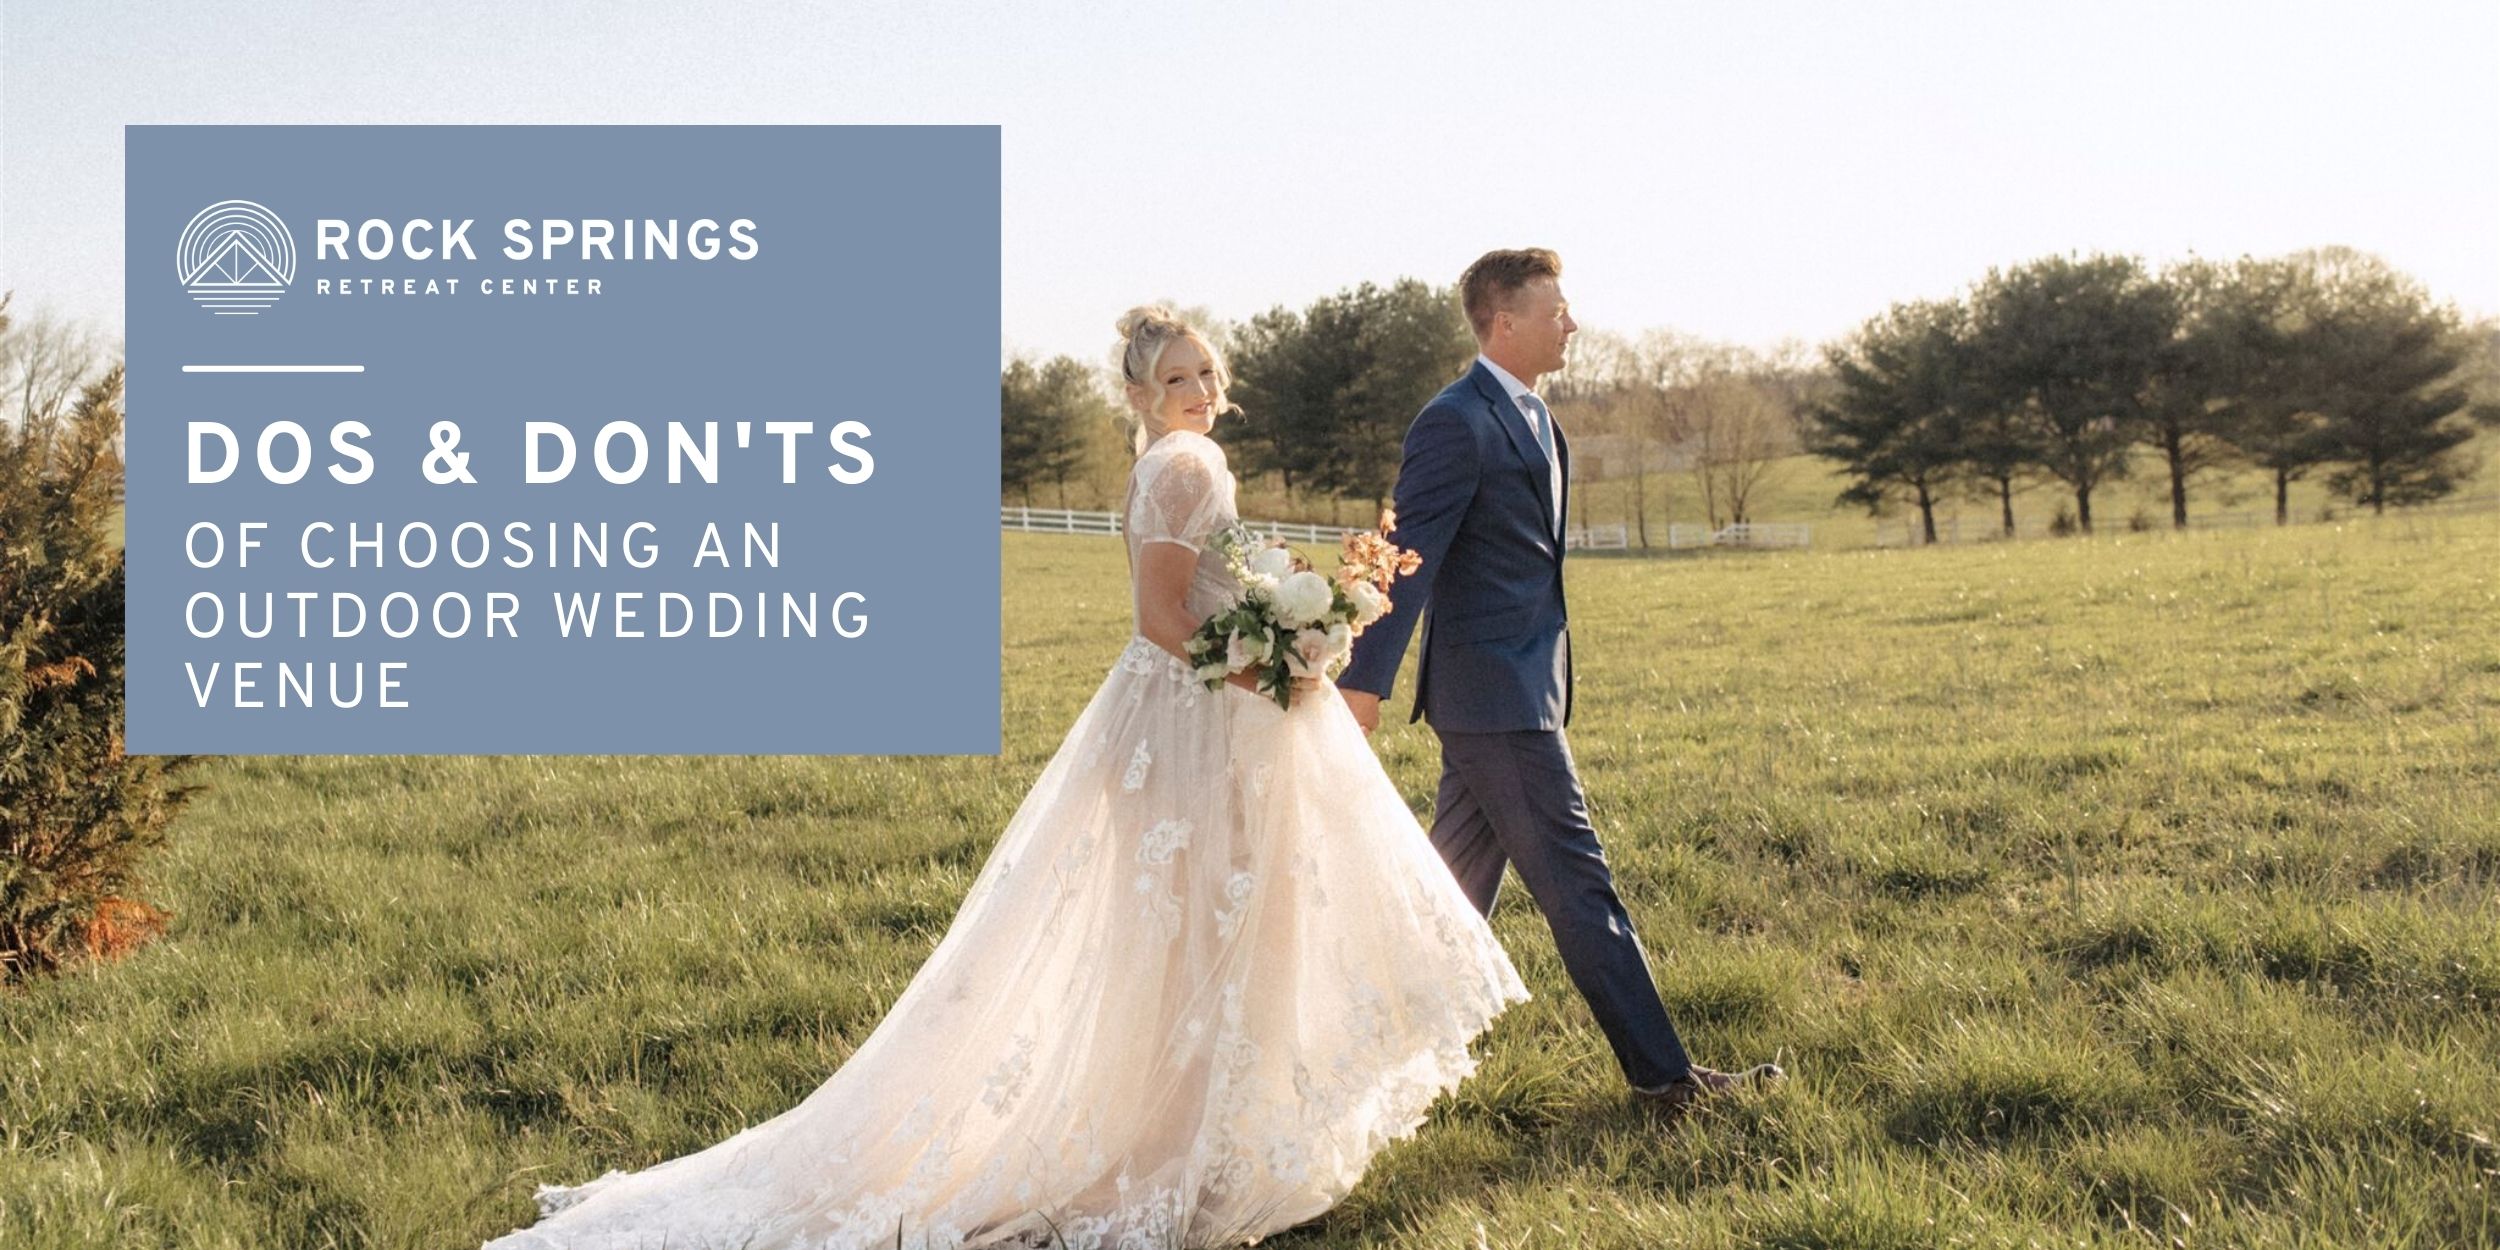 Dos & Don’ts of Choosing an Outdoor Wedding Venue